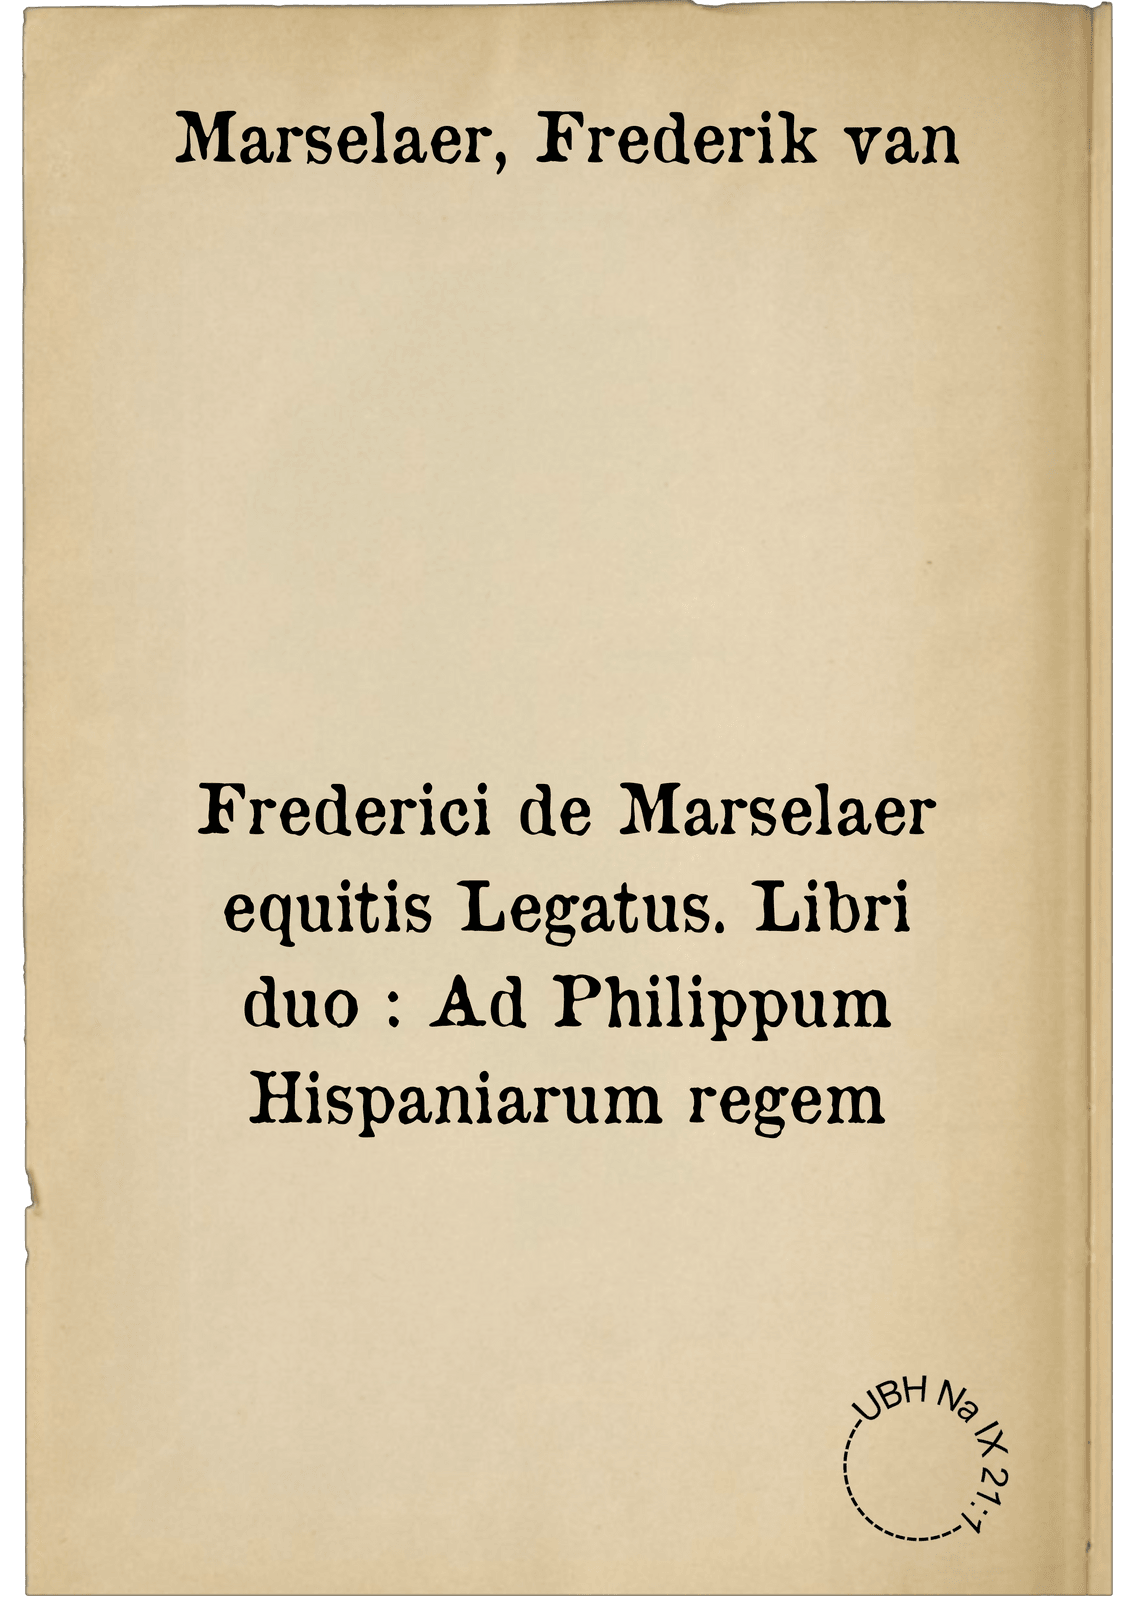 Frederici de Marselaer equitis Legatus. Libri duo : Ad Philippum Hispaniarum regem